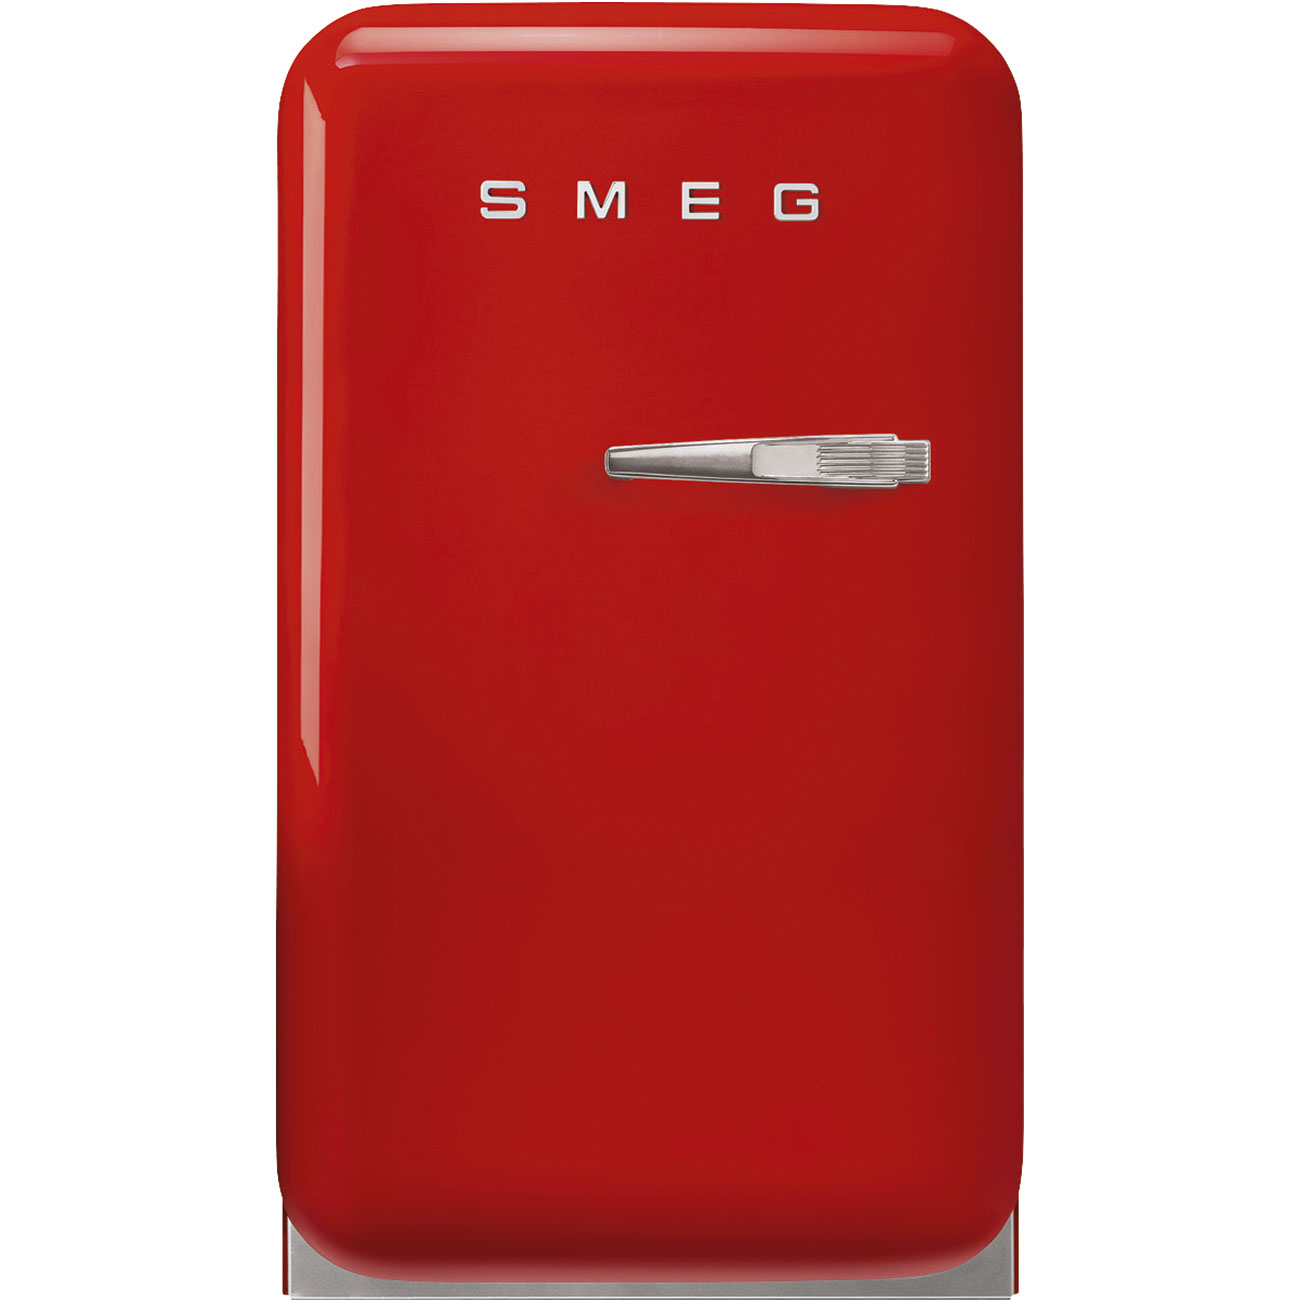 Tủ lạnh màu đỏ - Smeg_1